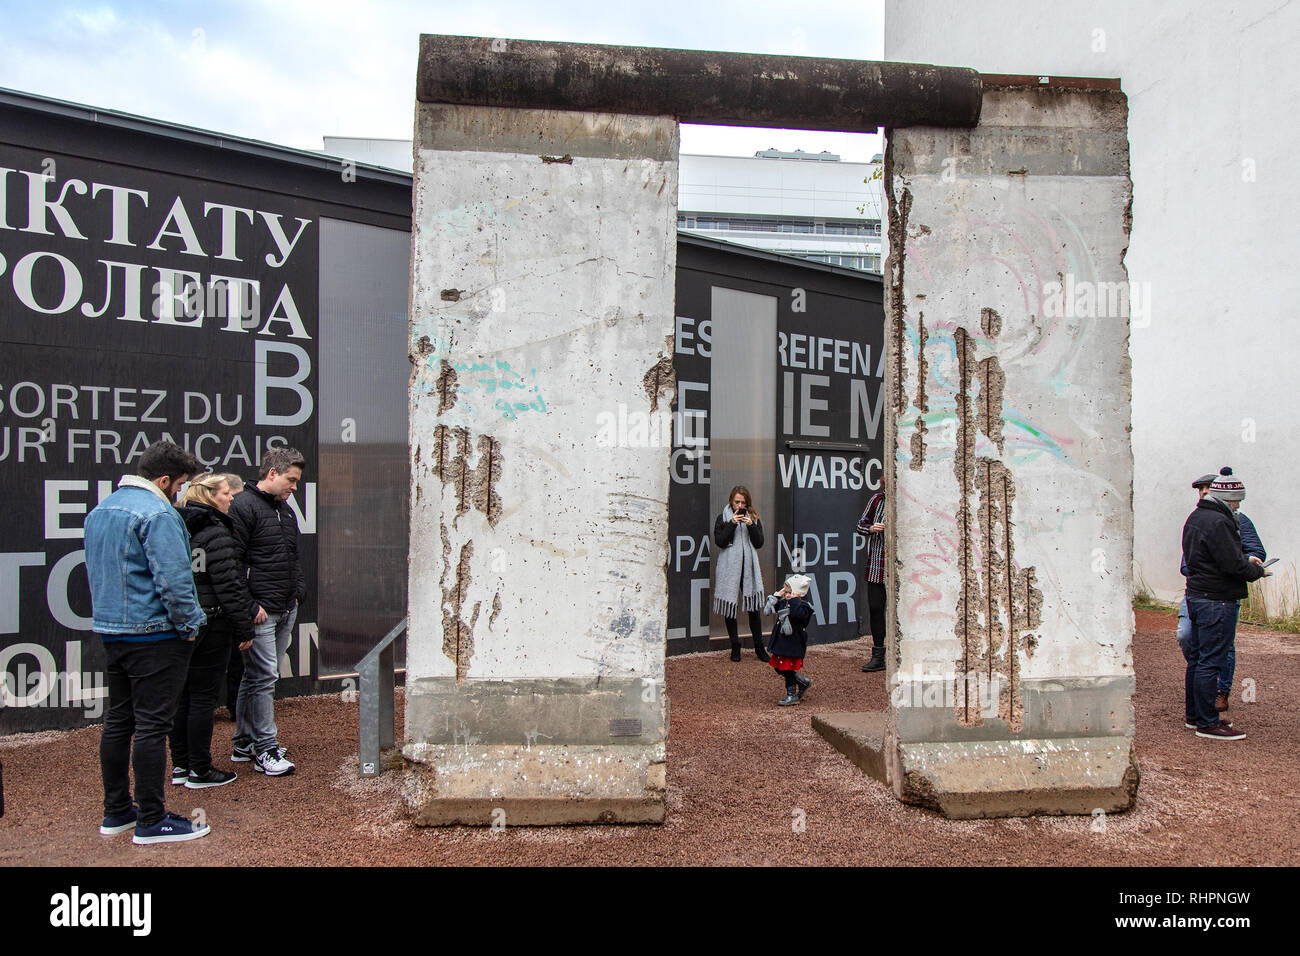 Železná opona - Berlínská zeď a Check Point Charlie, Berlín, Německo / Iron  Curtain - The Berlin Wall and Check Point Charlie, Berlin, Germany Stock  Photo - Alamy